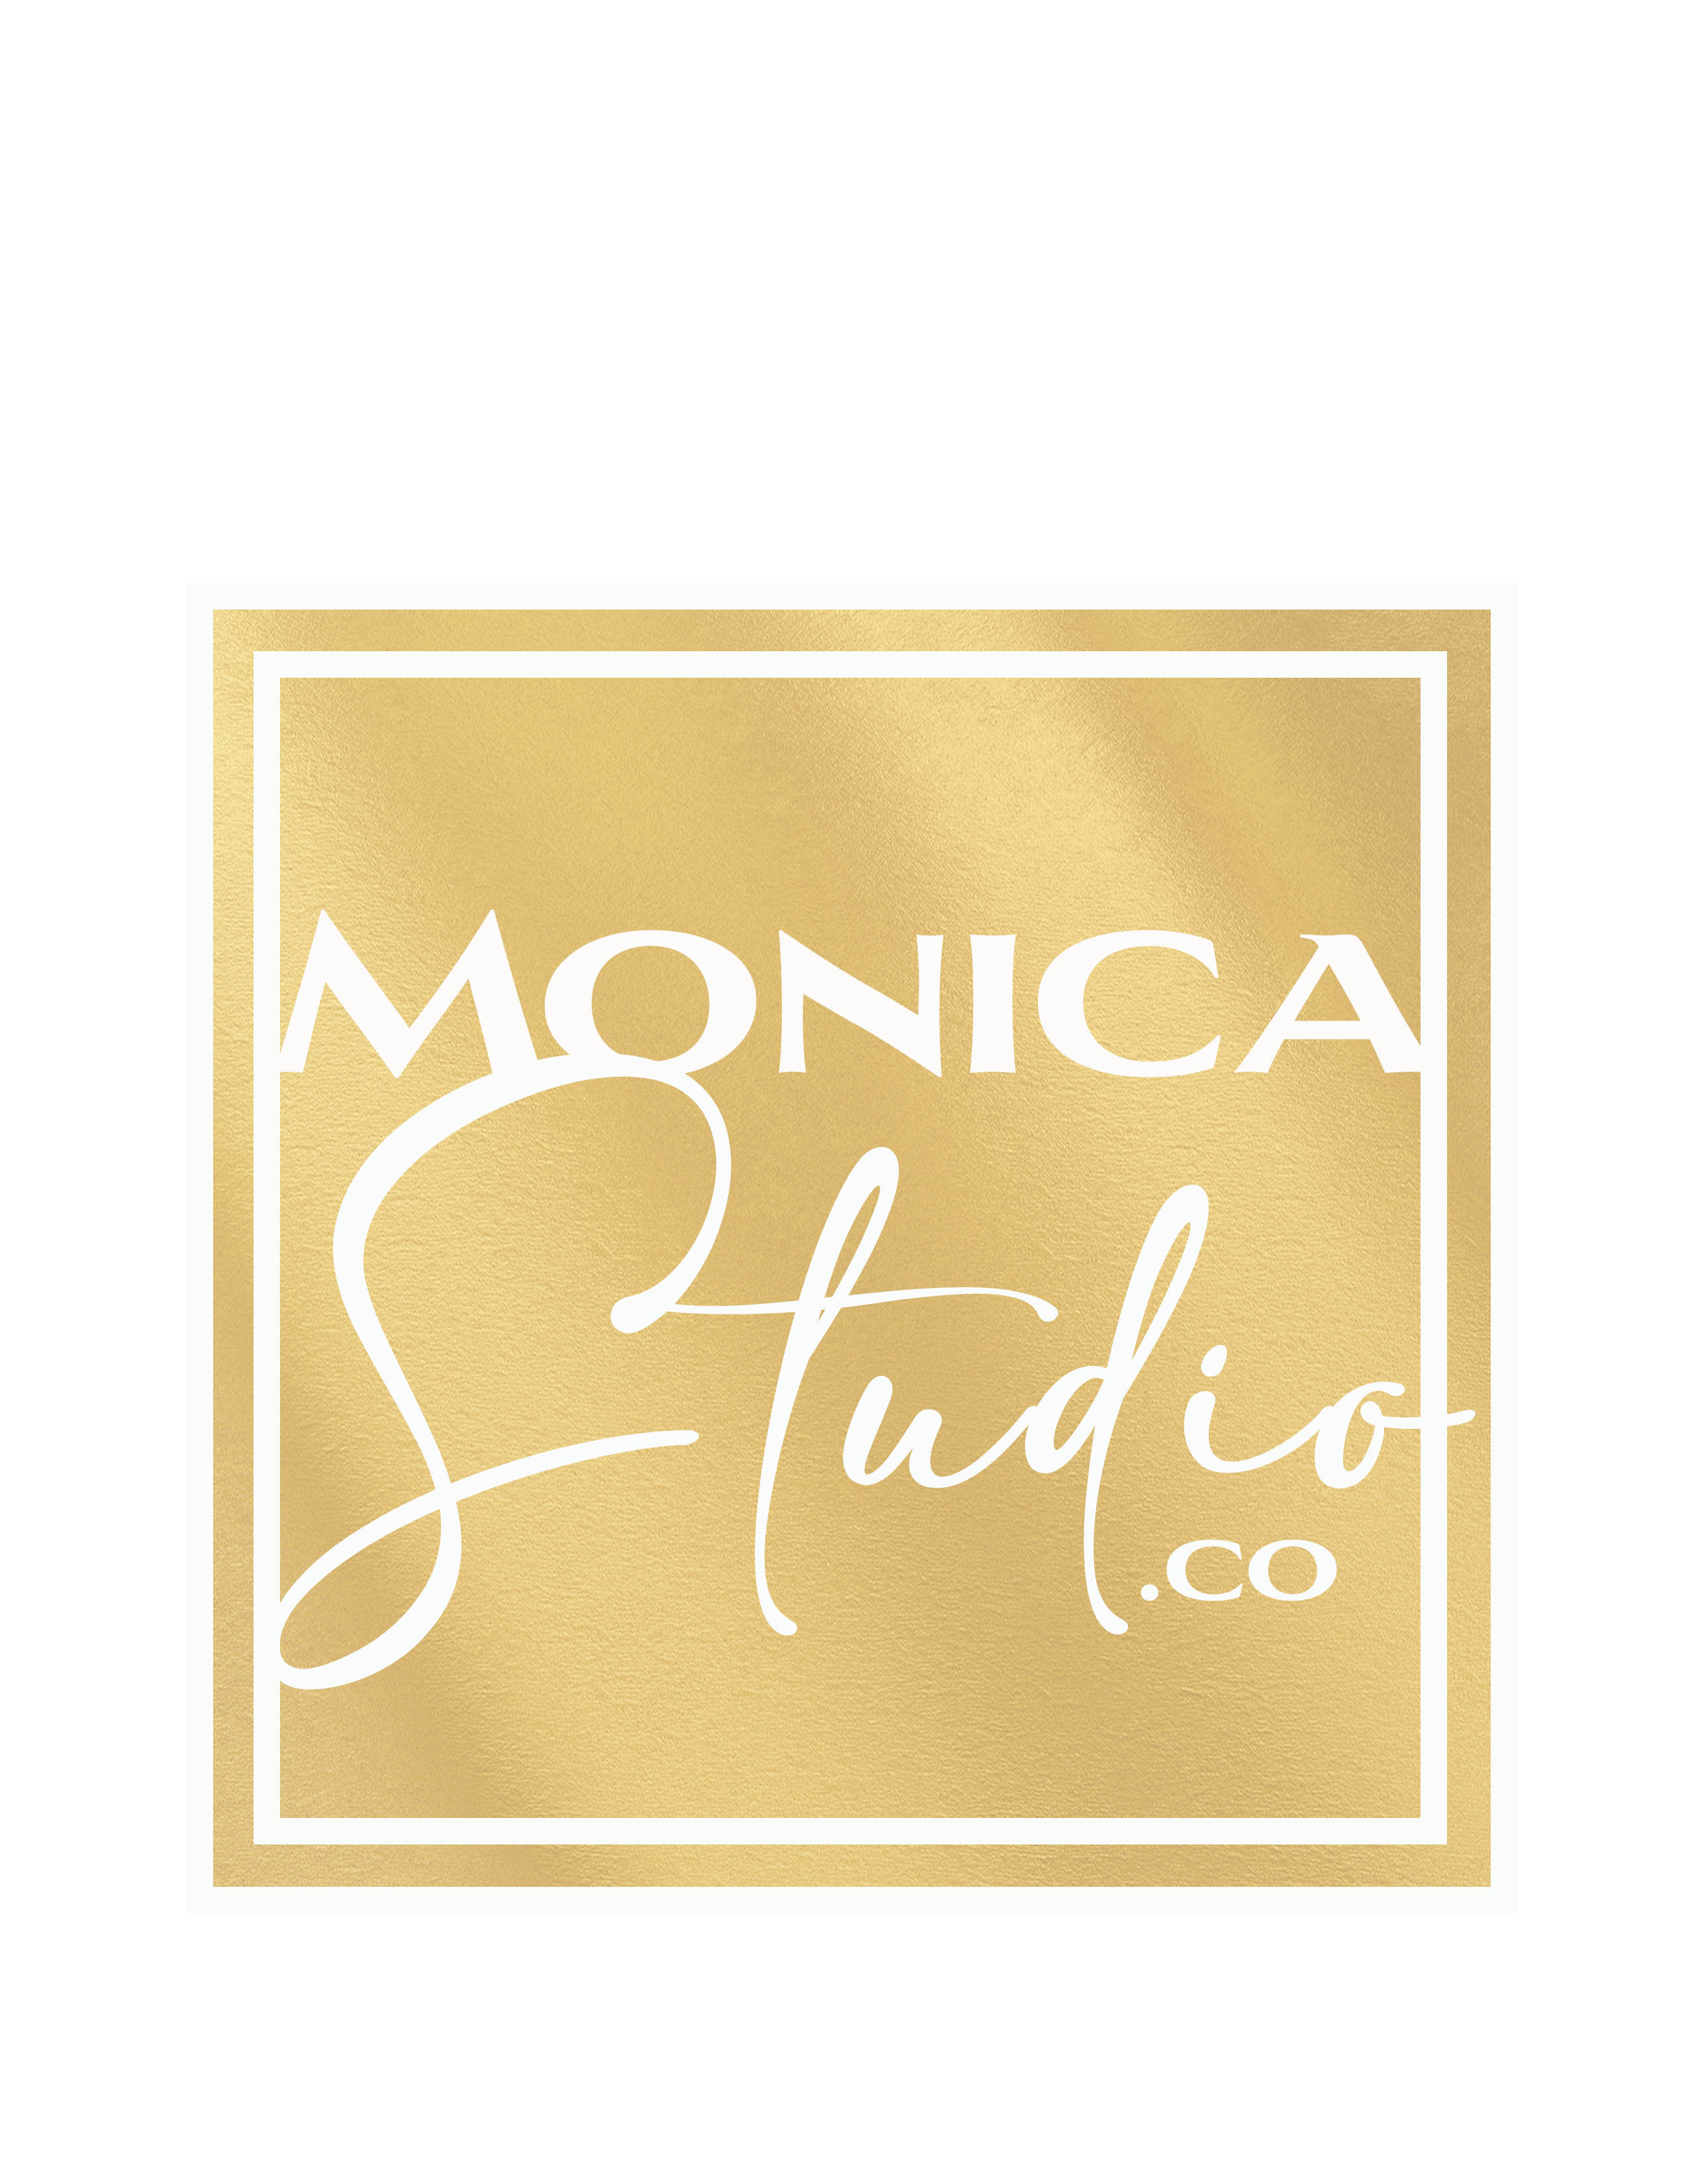 MonicaStudio.co